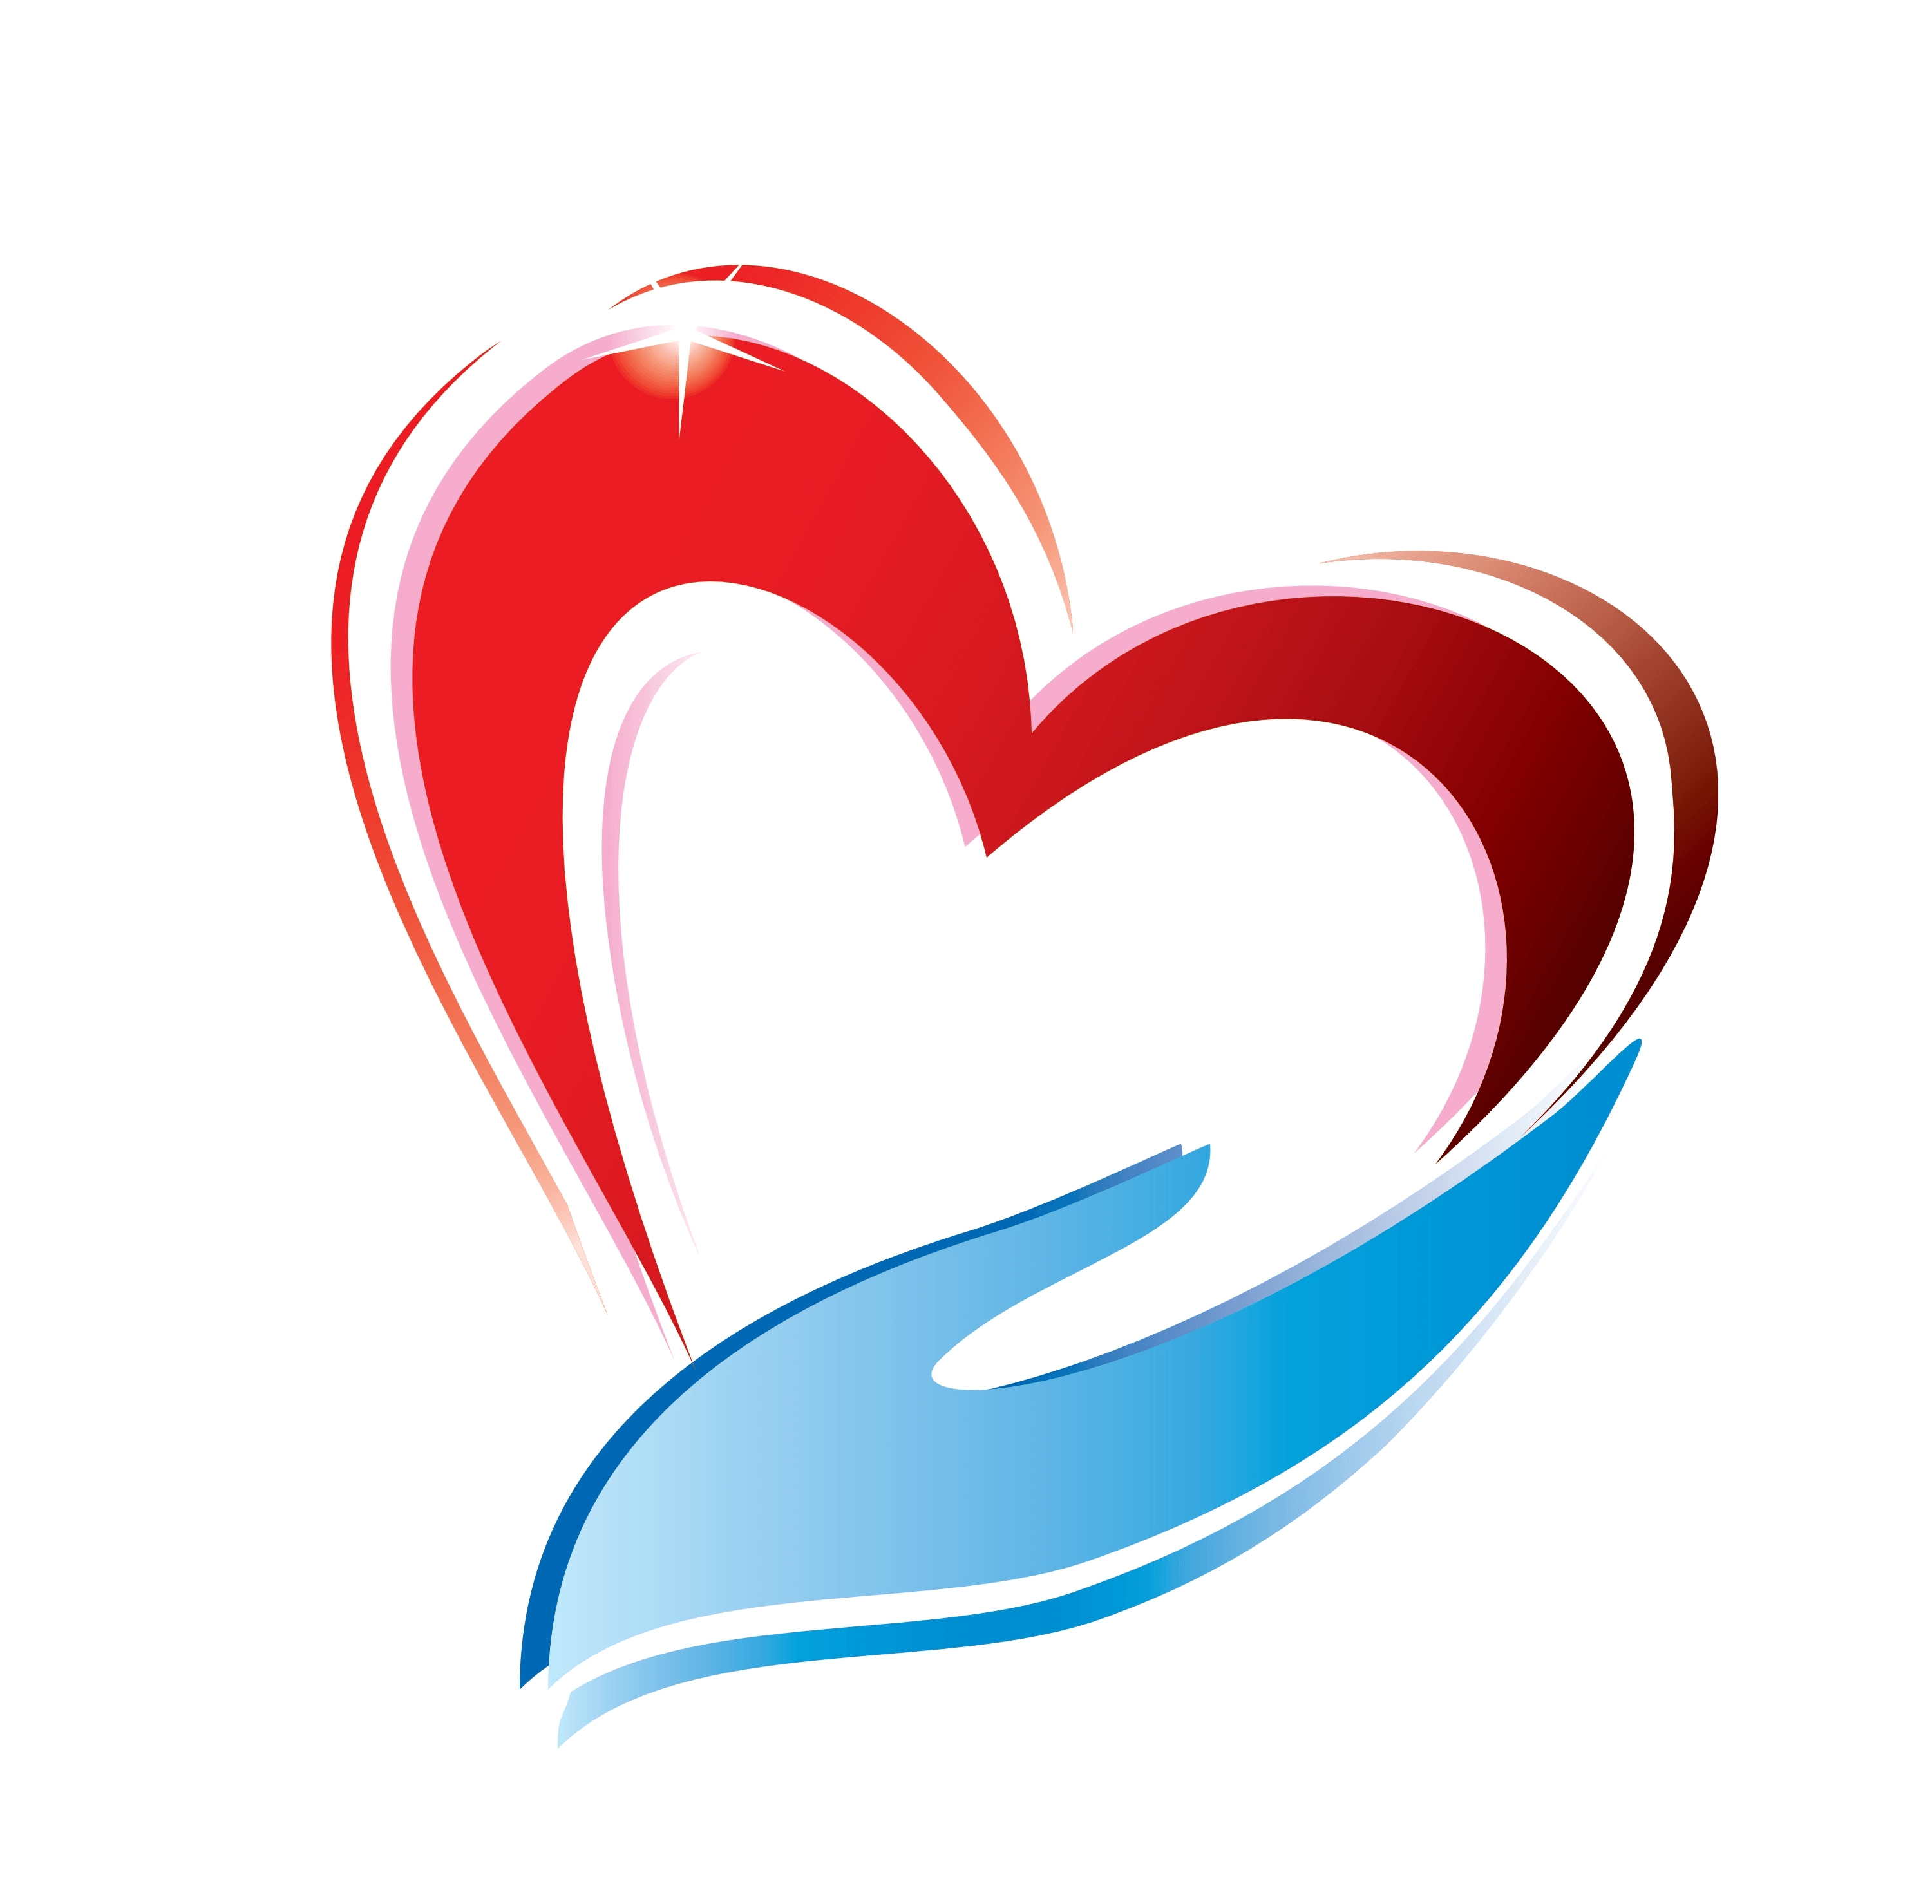 Heart Logo - Pin by Marinka Willig on Hearts | Pinterest | Heart, Heart logo and ...